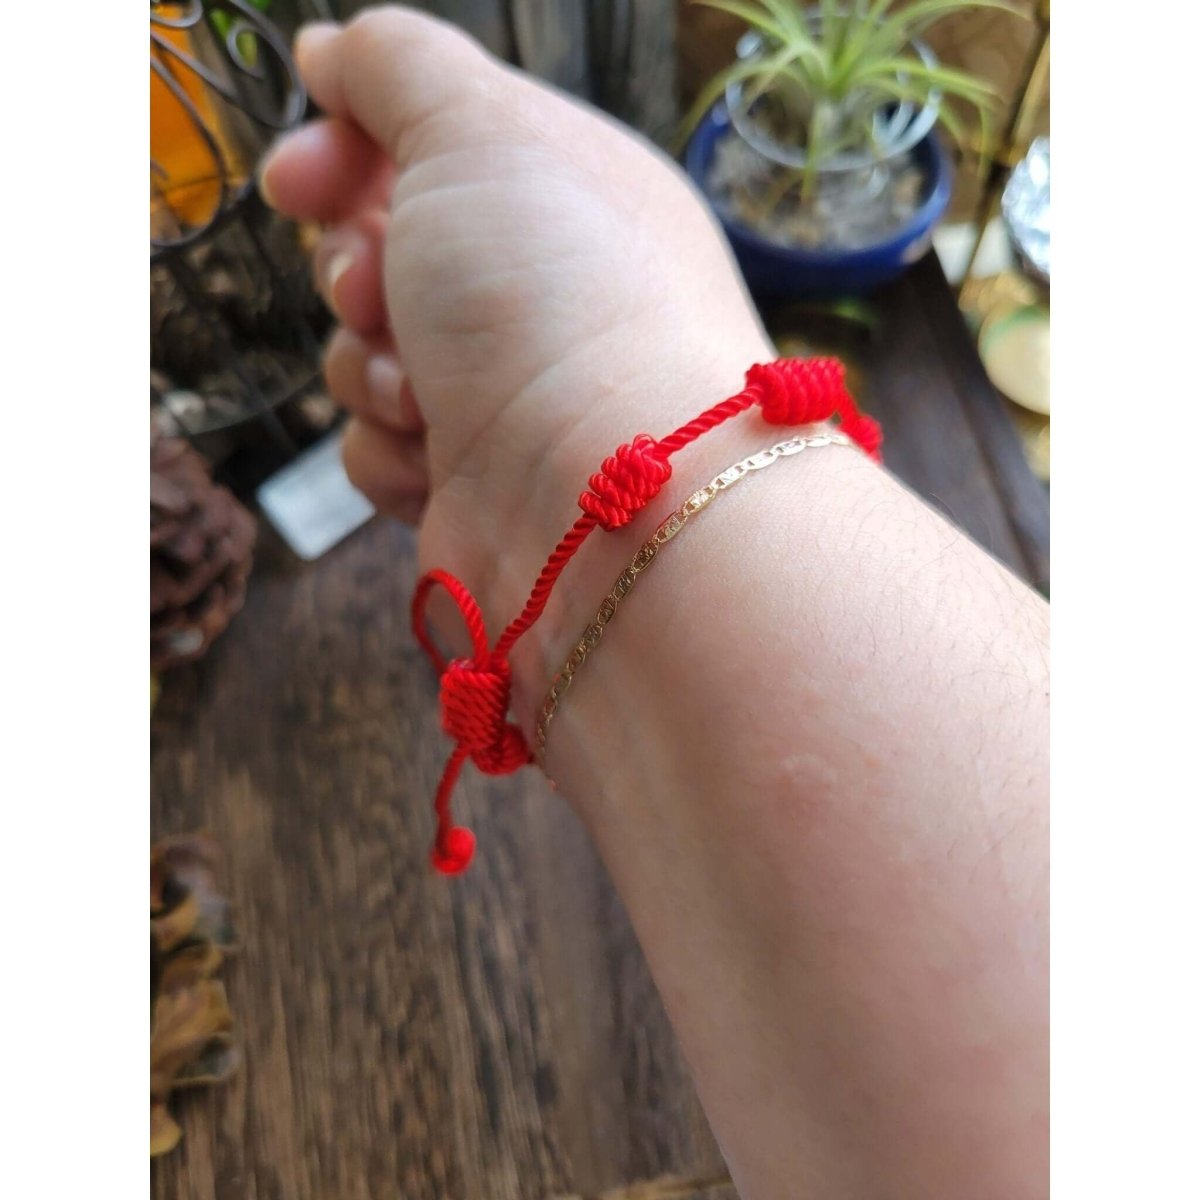 7 Knot Lucky Bracelets - Adjustable Red String Bracelets – My Magic Place  Shop